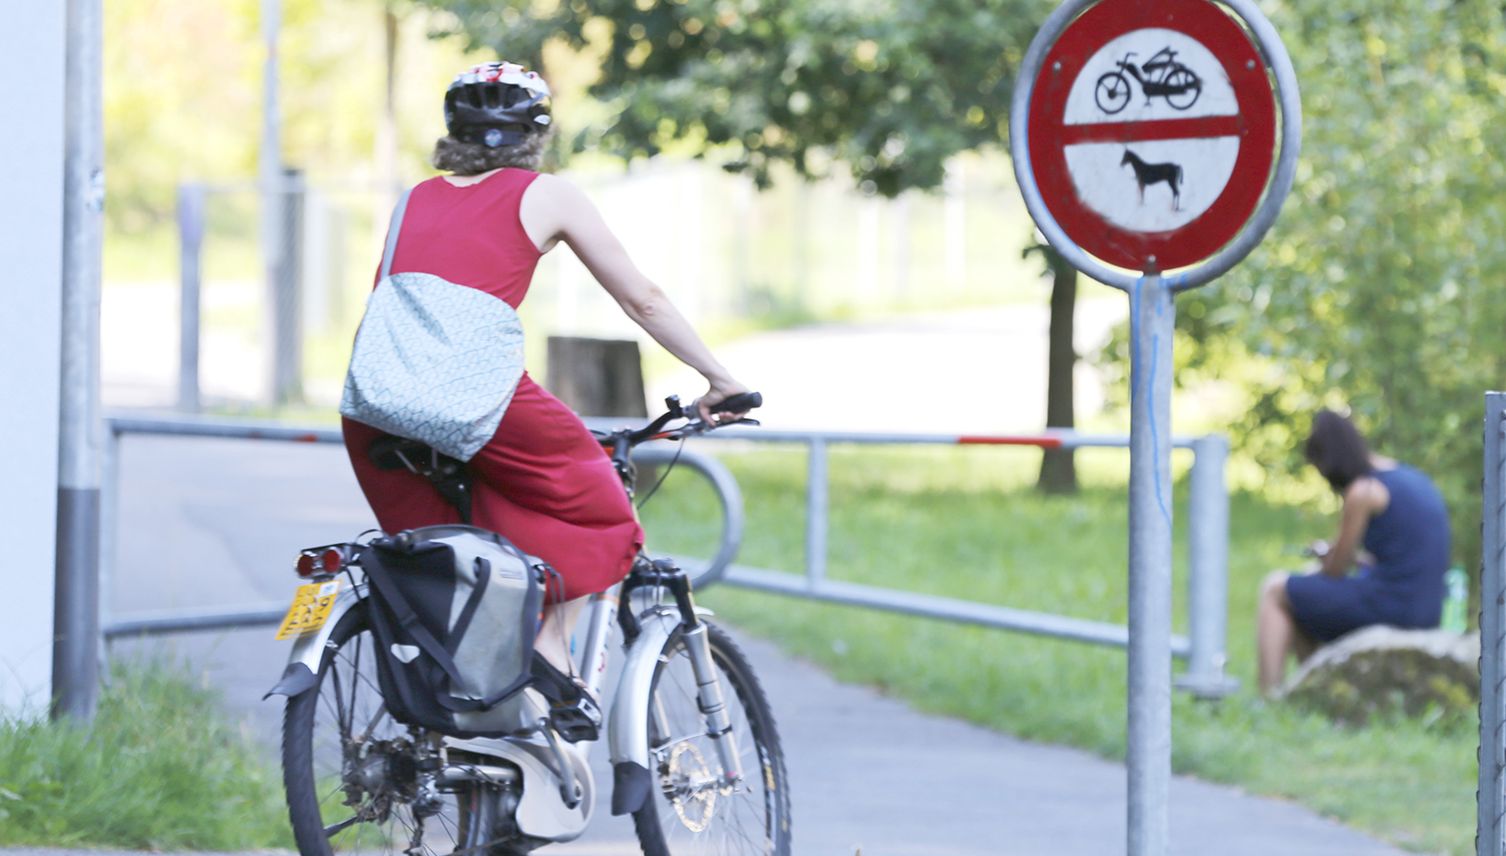 Schnelle E-Bikes sorgen in Kriens für Konflikte